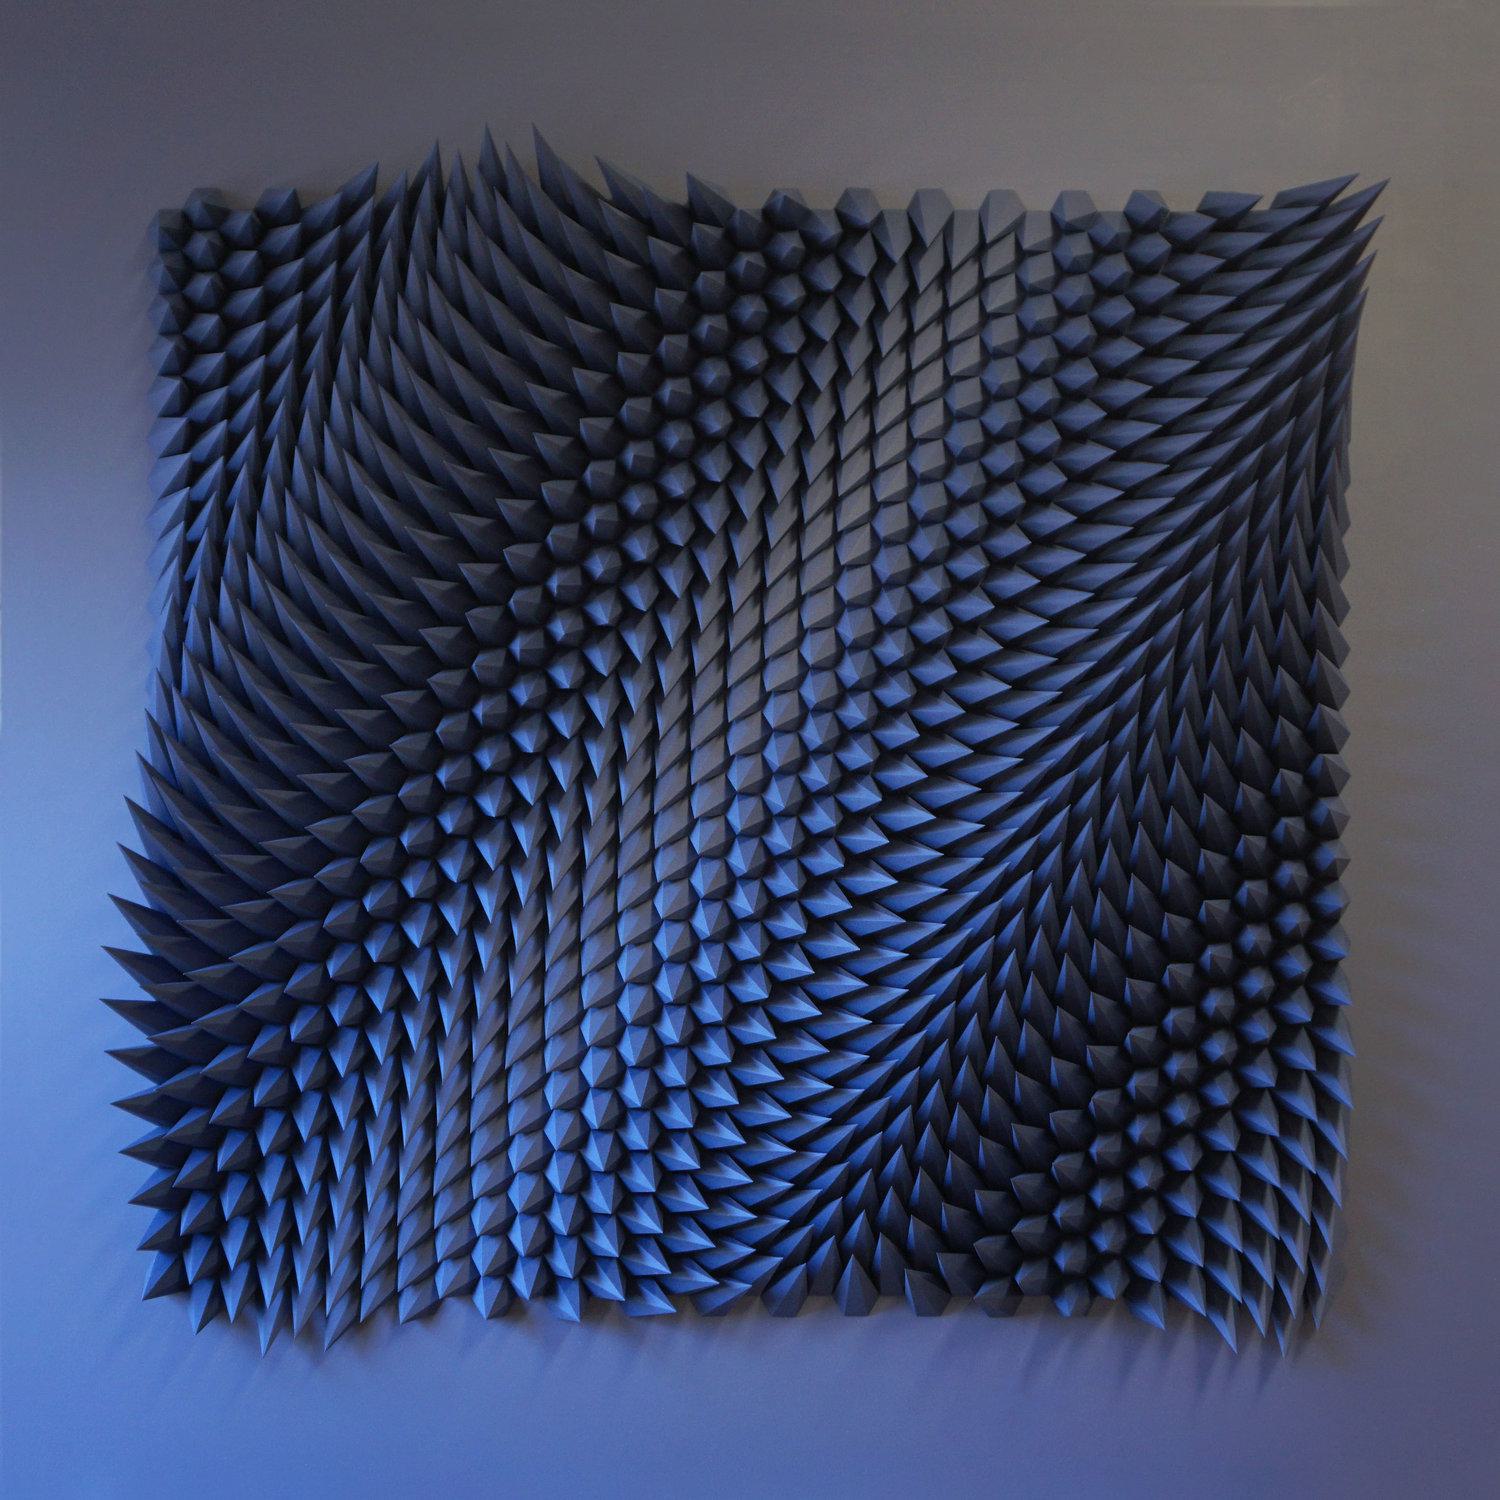 Image of The Paper Sculptures of Matt Shlian